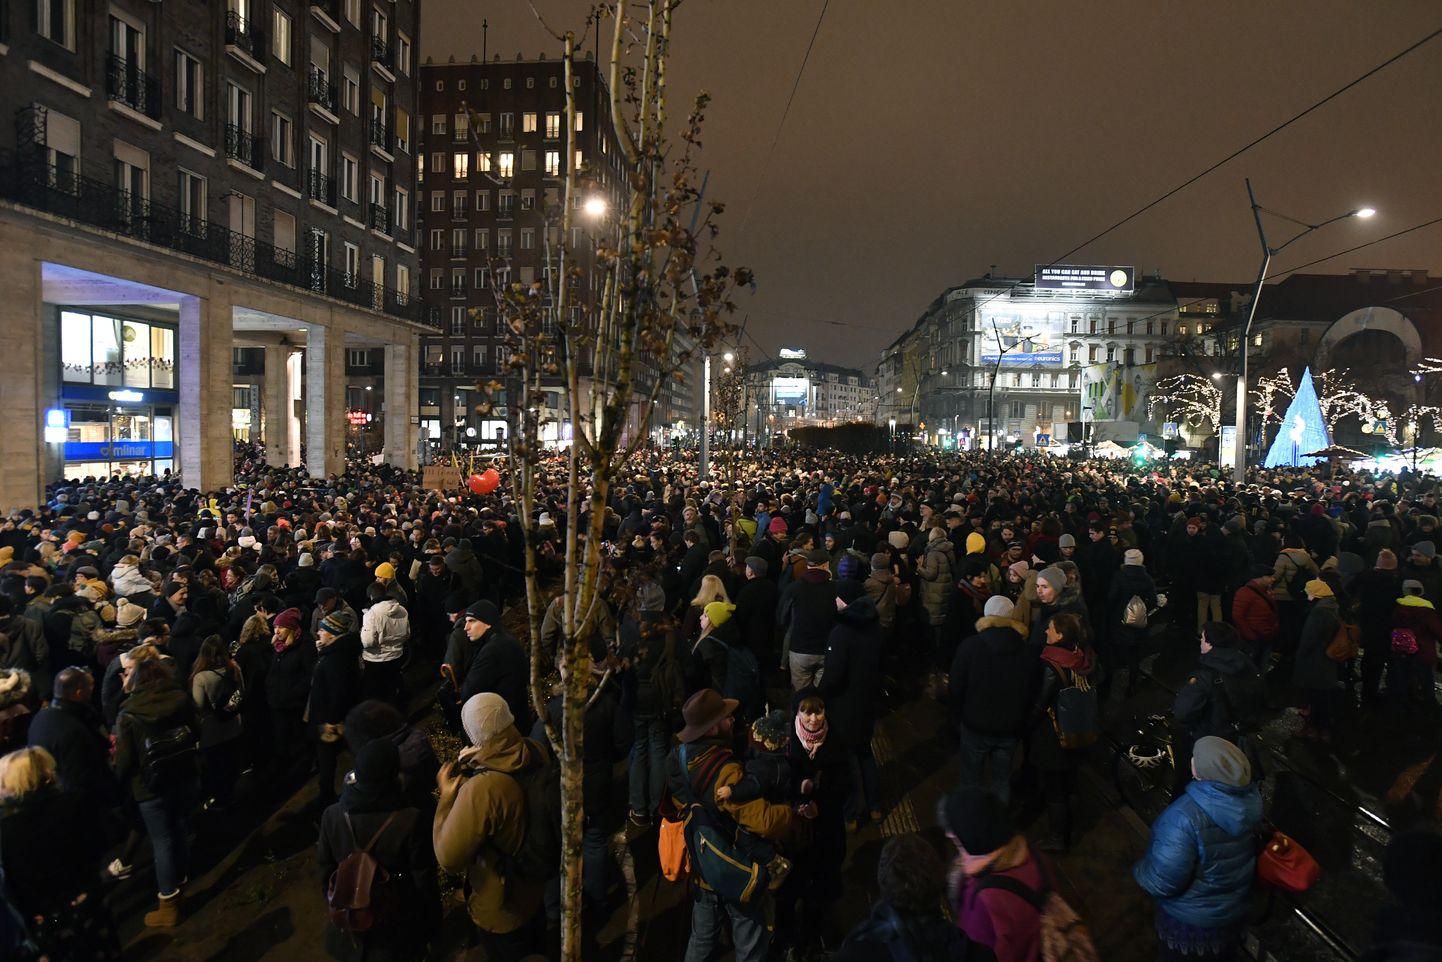 Budapestis korraldati meeleavaldus Ungari valitsuse plaani vastu kehtestada kontroll teatrite üle.